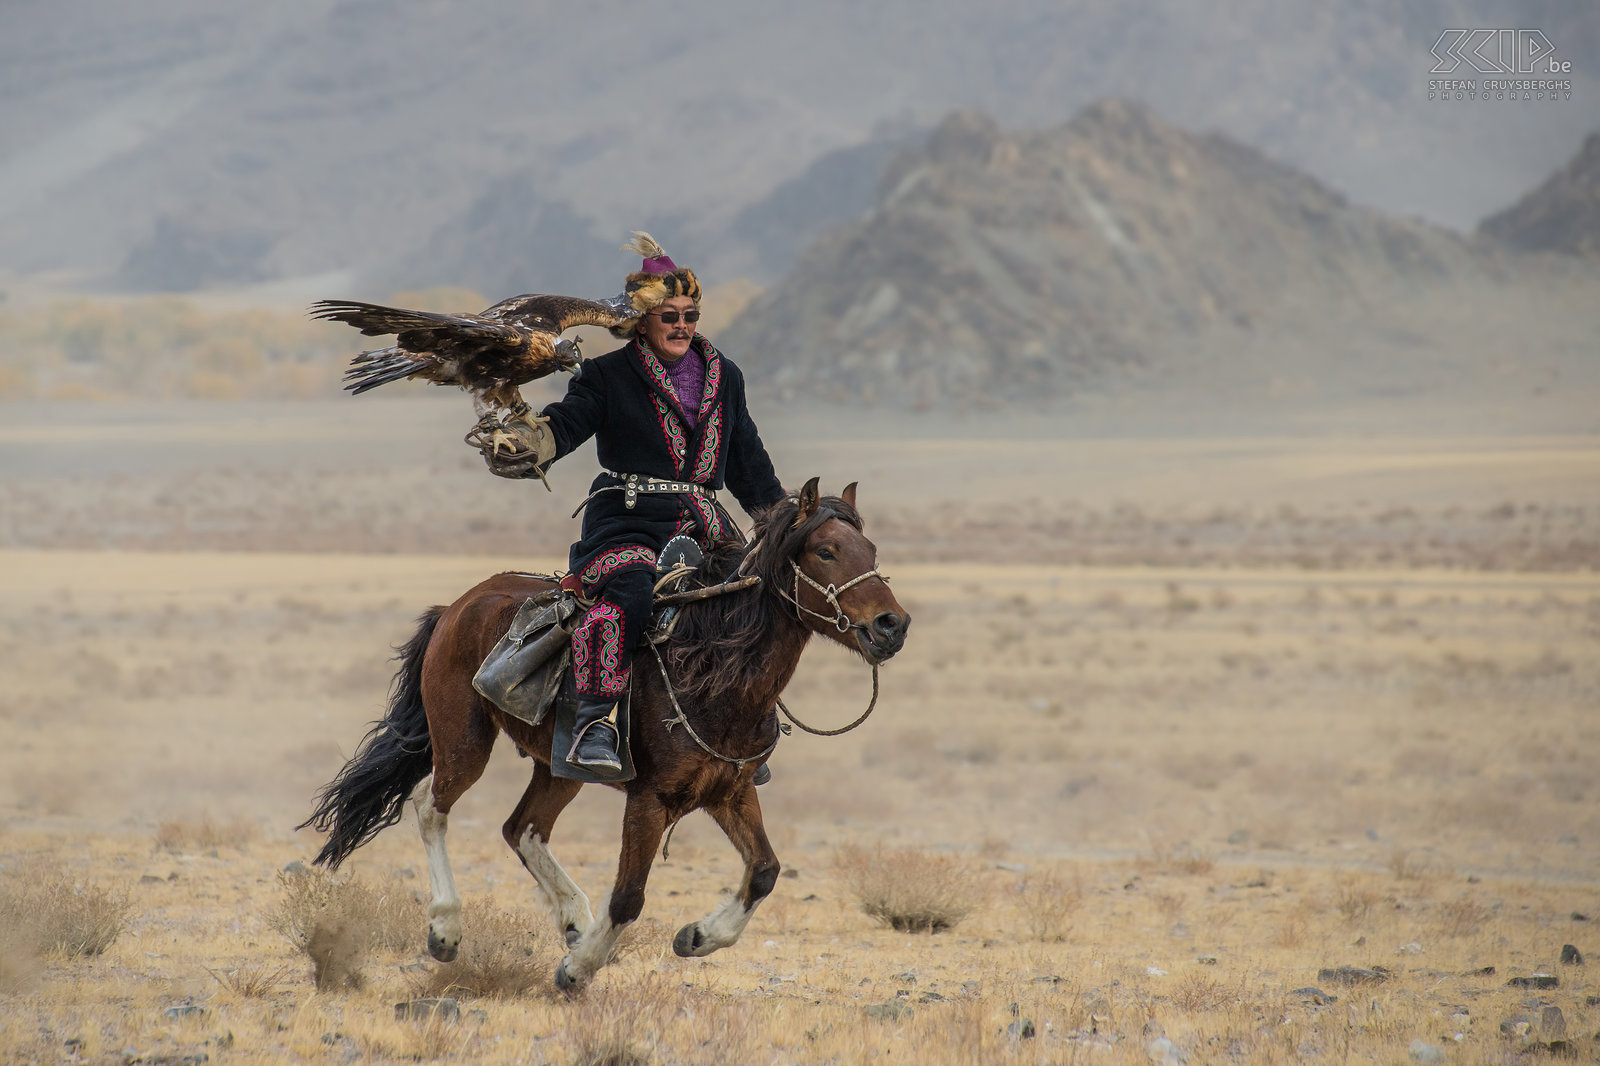 Ulgii - Golden Eagle Festival - Arendjager De Kazakken in het Altai gebergte in het westen van Mongolië beoefenen nog steeds de oude traditie van het jagen met getrainde steenarenden/adelaars. De traditie van het jagen met arenden is waarschijnlijk begonnen bij de nomadische Khitans van Mantsjoerije in het noorden van China rond 940 n.Chr. Volgens oude verslagen hield Genghis Khan zelfs 1000 vogels voor de jacht. <br />
<br />
Vandaag zijn er nog ongeveer 250 Kazakse mensen die deze oude traditie verderzetten. Maar waarschijnlijk zijn er slechts een 30-tal families die nog op de nomadische manier leven zoals eeuwen geleden. Ze zijn afhankelijk van het seizoen. In de winter was de jacht op konijnen, vossen en wolven vroeger essentieel voor voedsel en kleding. Maar het is ook meer, 't is een kunstvorm waarbij de juiste mix tussen kracht, behendigheid en zachtheid noodzakelijk is en waarbij een intense band tussen roofvogel en meester vereist is.<br />
<br />
Veel Kazakse mensen leven nog steeds in gers in de zomermaanden, maar in andere seizoenen trekken ze naar dorpen en steden. Maar ze houden nog steeds hun arenden en beoefenen het jagen met arenden als hobby zodat hun cultureel erfgoed nog steeds springlevend is. Stefan Cruysberghs